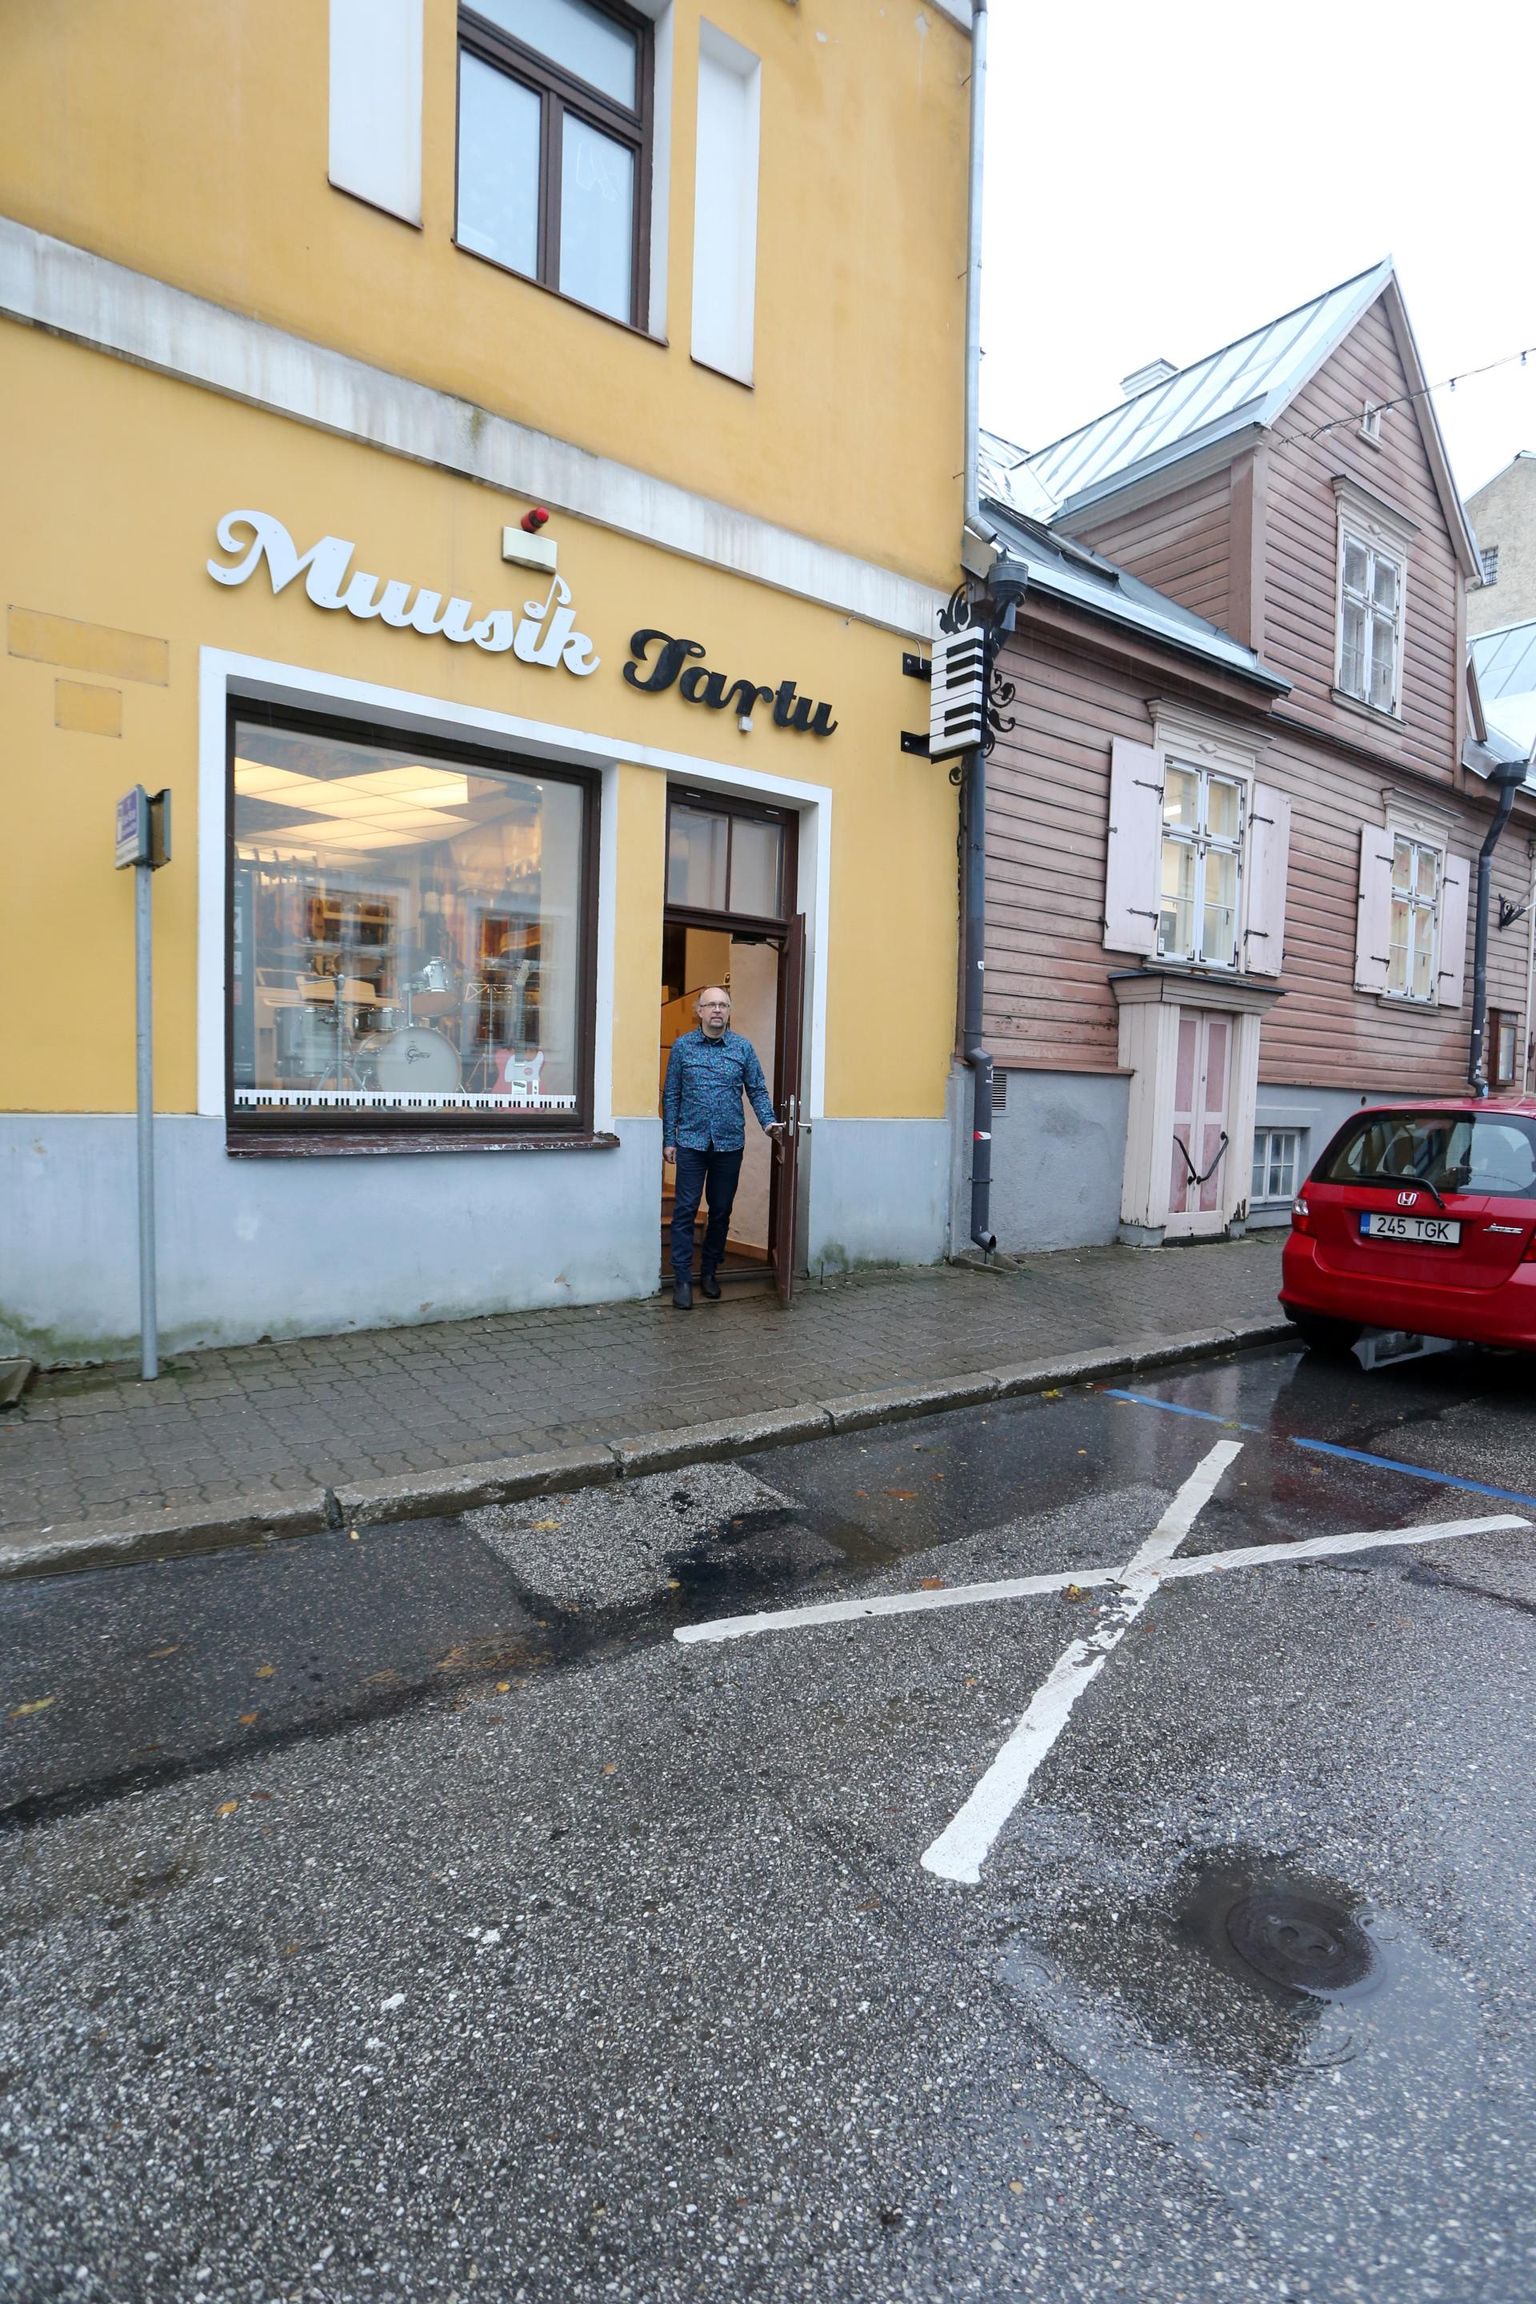 Kaupluse Muusik Tartu juhataja Halvo Liivamägi sõnul on raskeid muusikariistu kaugelt keeruline majja lohistada, aga otse ukse ette kaubaautot parkida ei tohi.